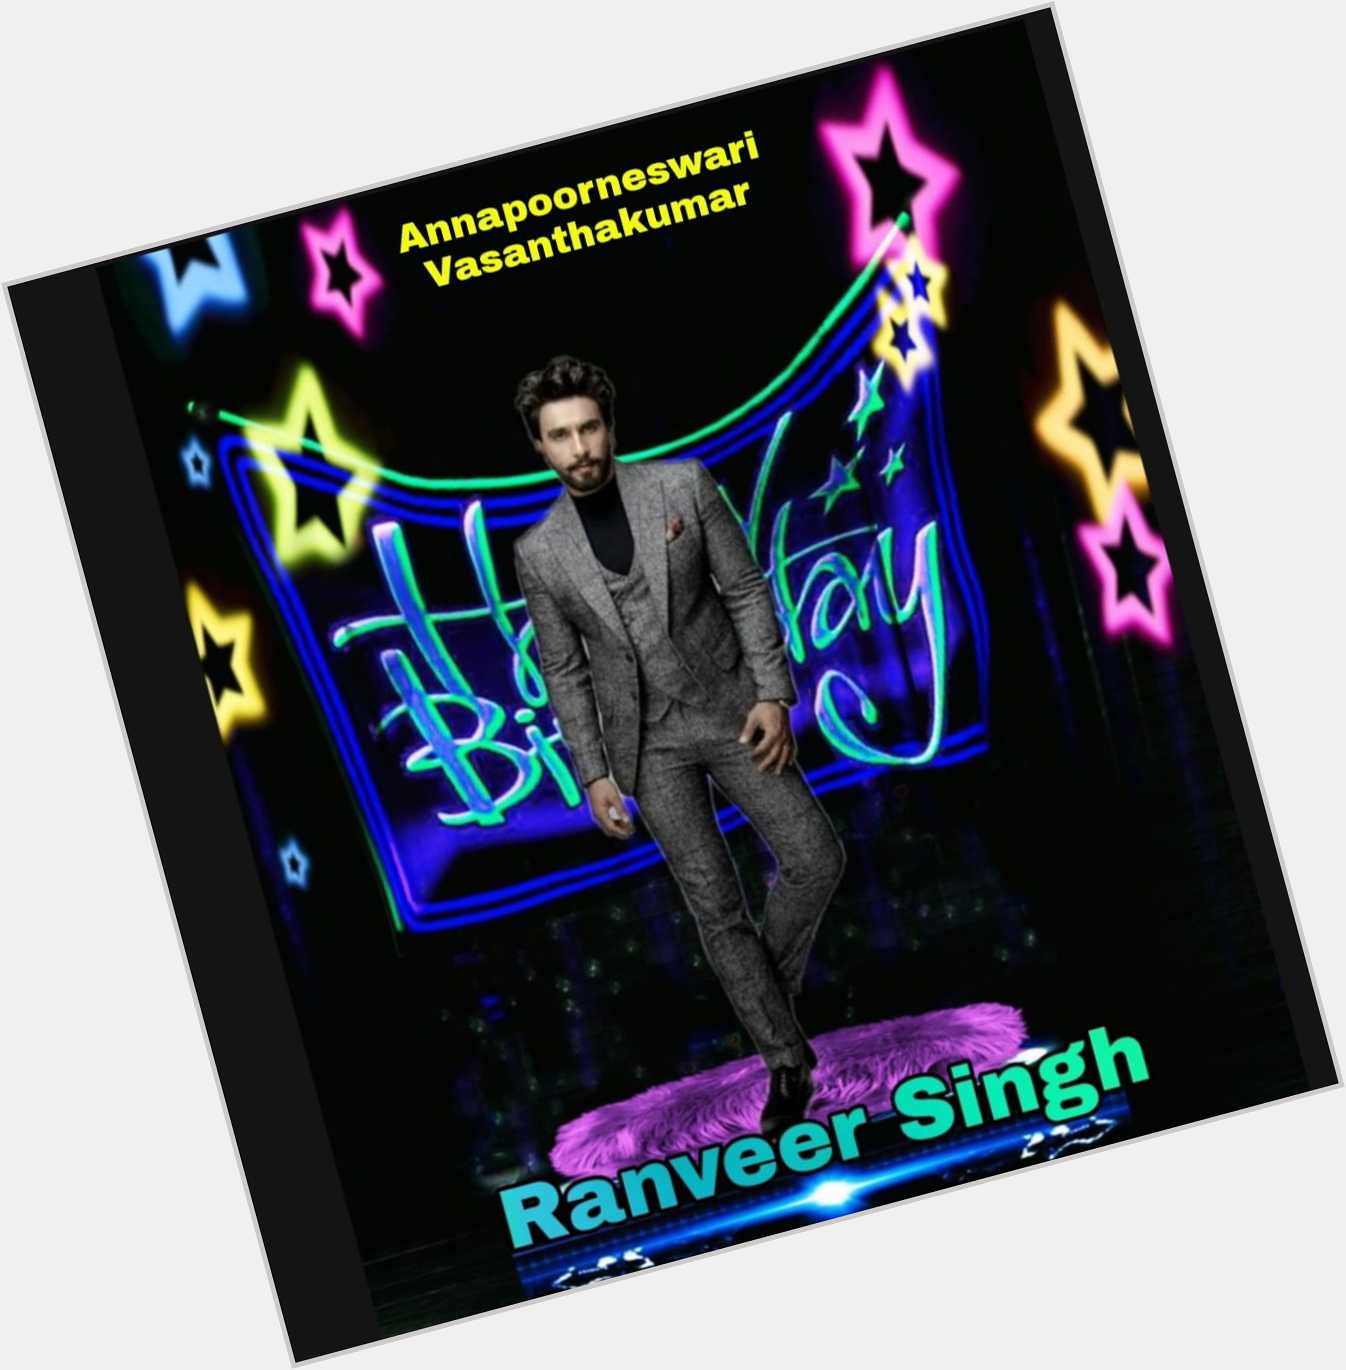 Happy Birthday Ranveer Singh  